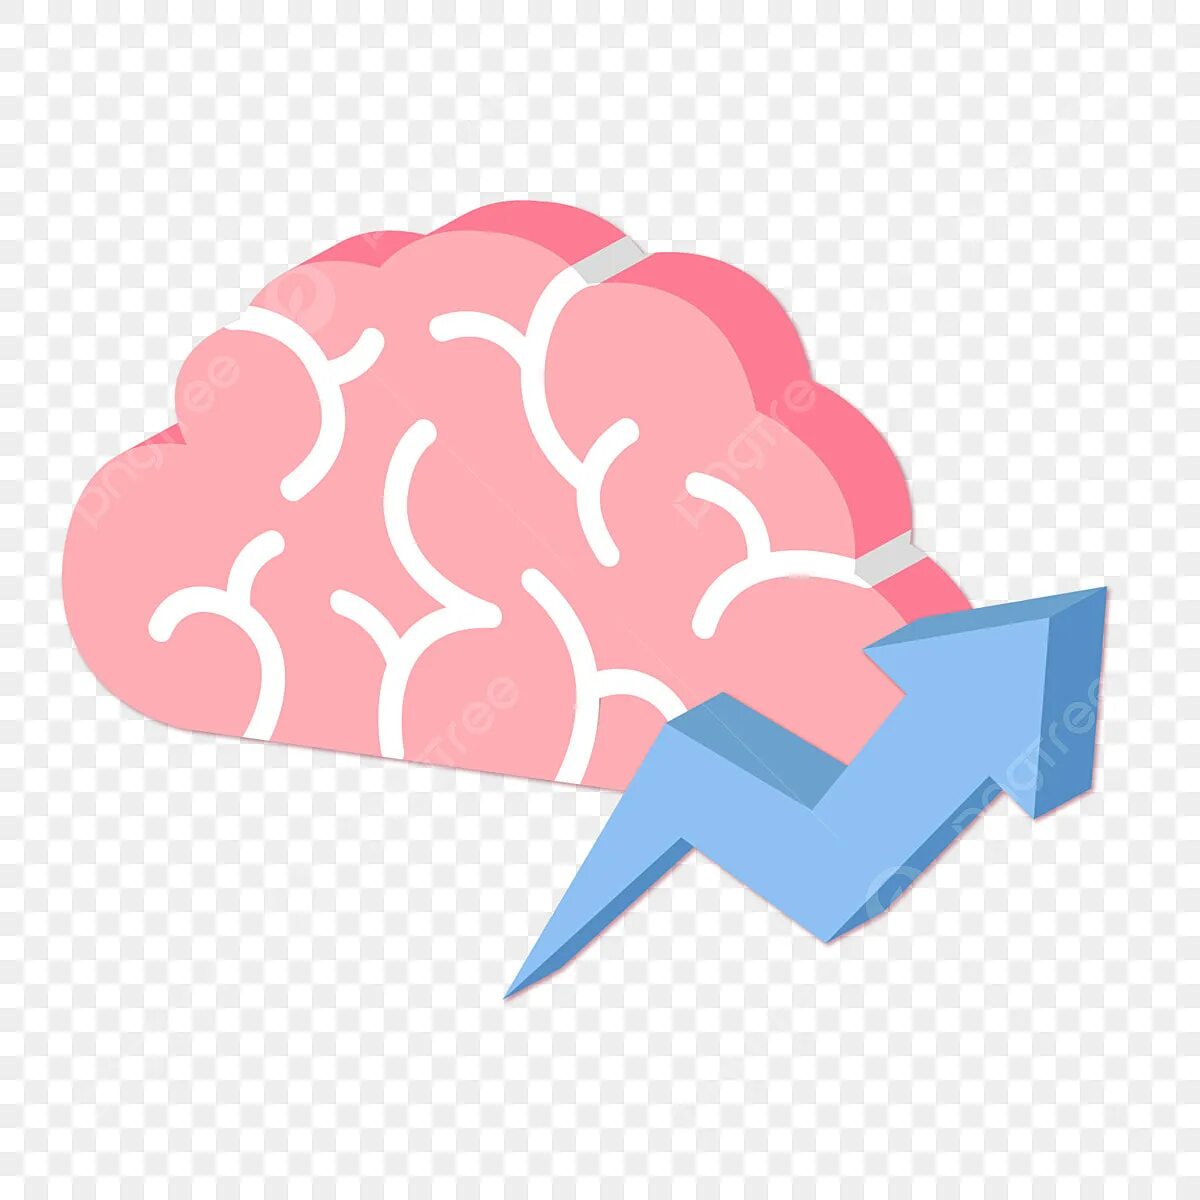 Заморозка мозга. Изменение мышления значок. Pink Brains icon transparent background.